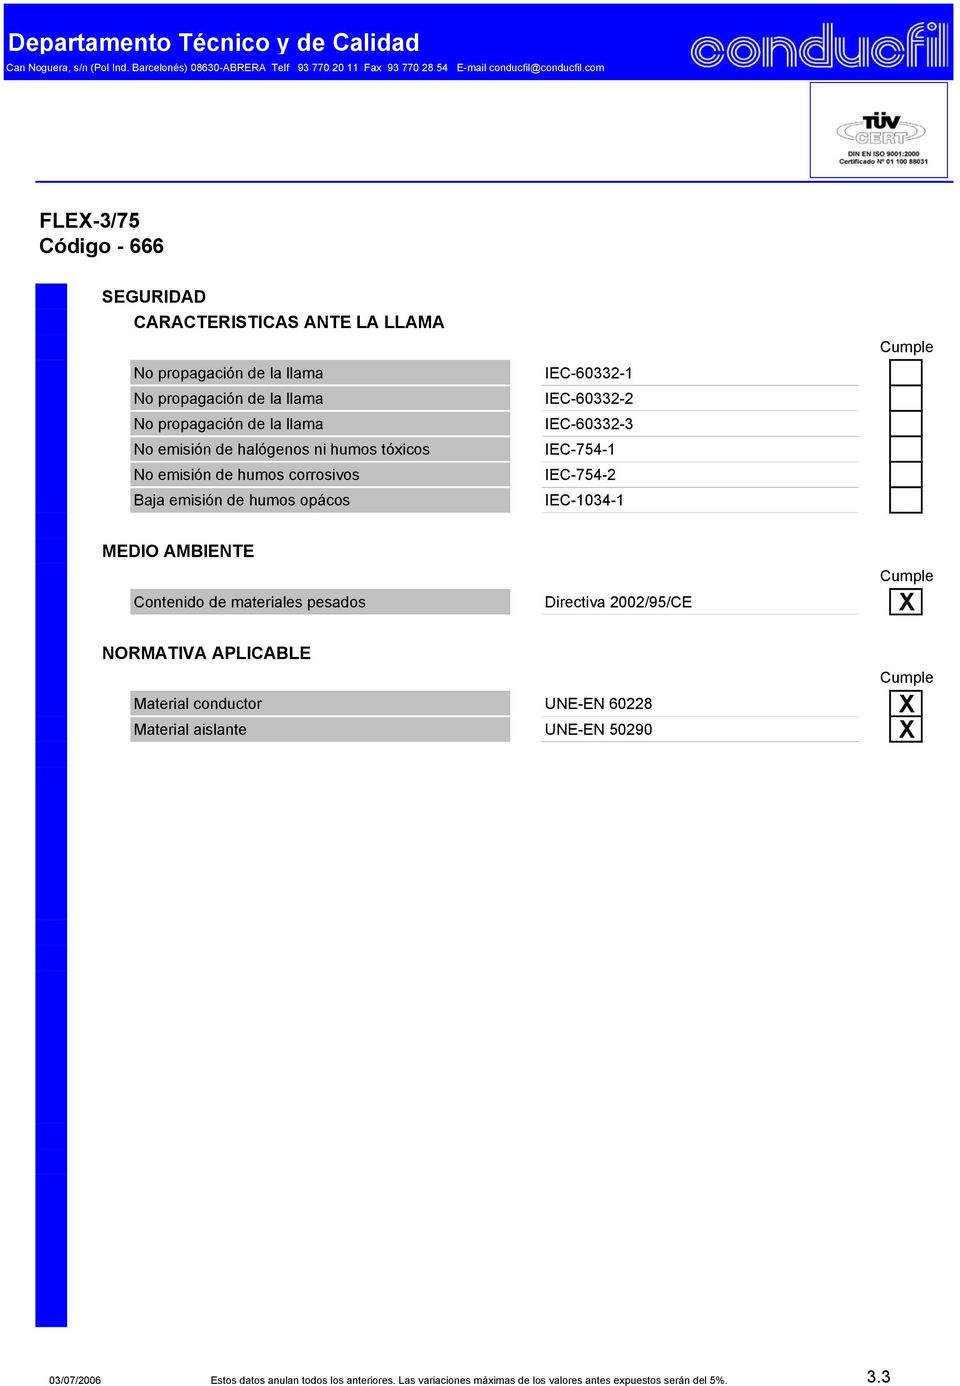 Contenido de materiales pesados Directiva 2002/95/CE X NORMATIVA APLICABLE conductor UNE-EN 60228 X aislante UNE-EN 50290 X